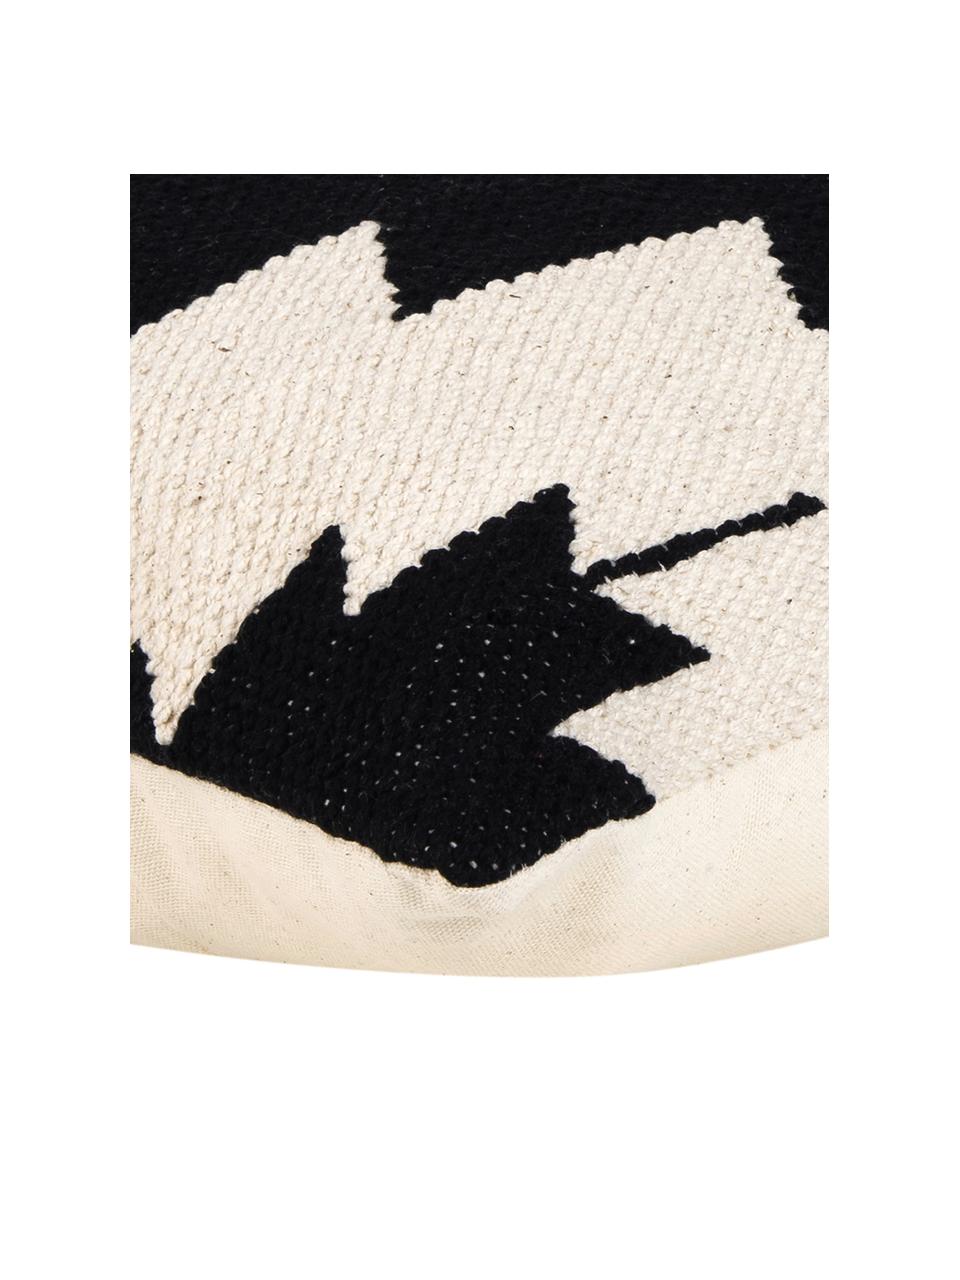 Tkana poszewka na poduszkę w stylu etno Cancun, 100% bawełna, Czarny, beżowy, S 45 x D 45 cm